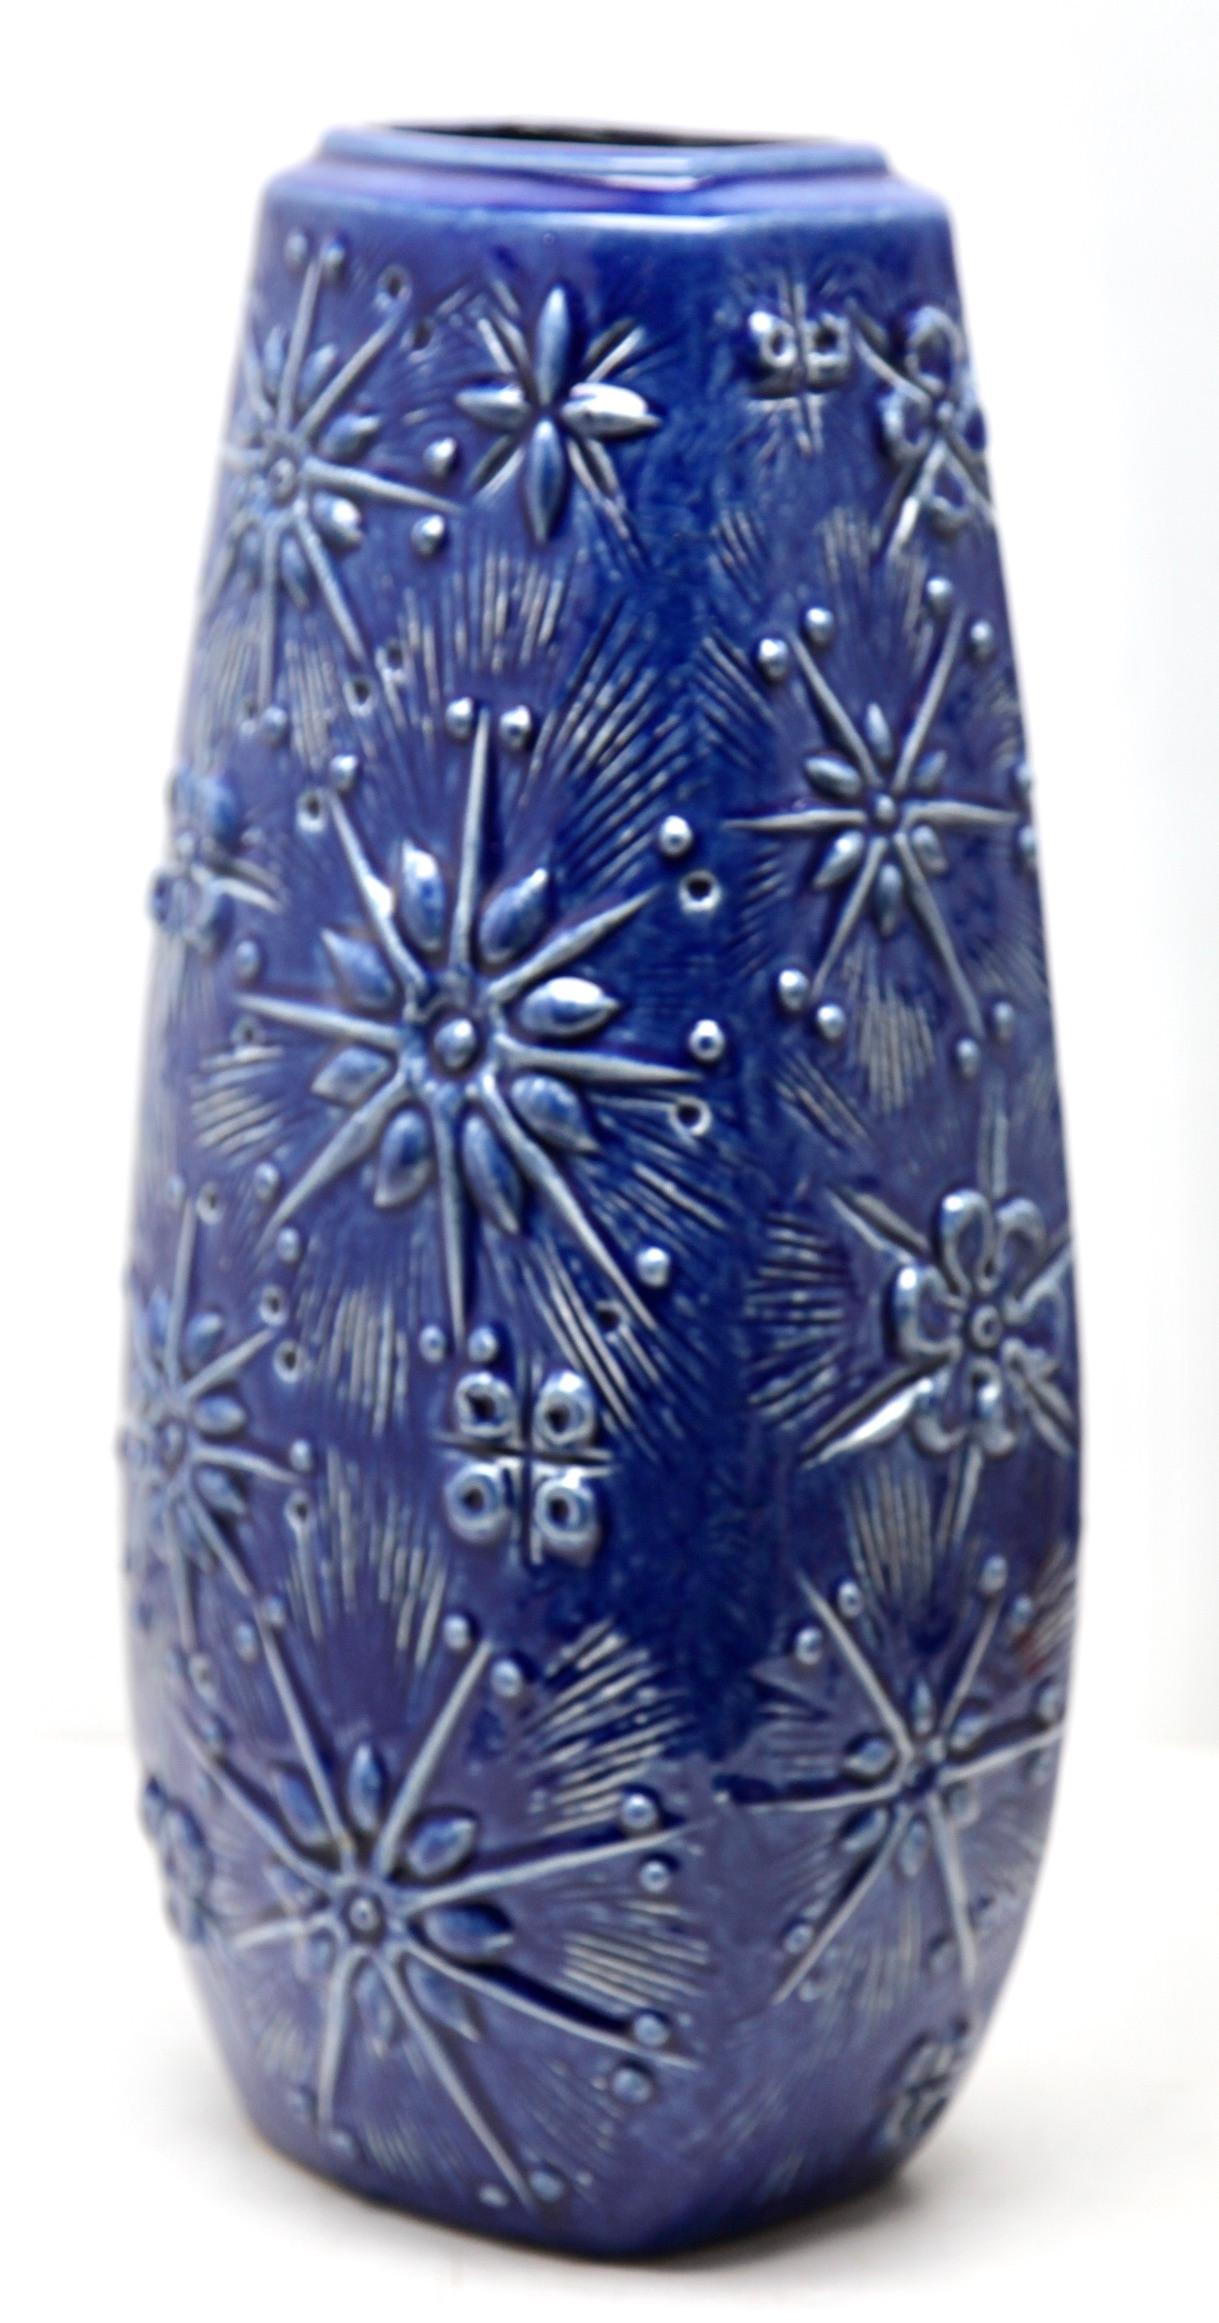 Diese originelle Vintage-Vase wurde in den 1970er Jahren in Deutschland hergestellt. Sie ist aus Keramik gefertigt.
Auf dem Boden ist die Vasenseriennummer 263-46 Handarbeit vermerkt.
Geradliniges und minimalistisches Design aus den 1960er Jahren.